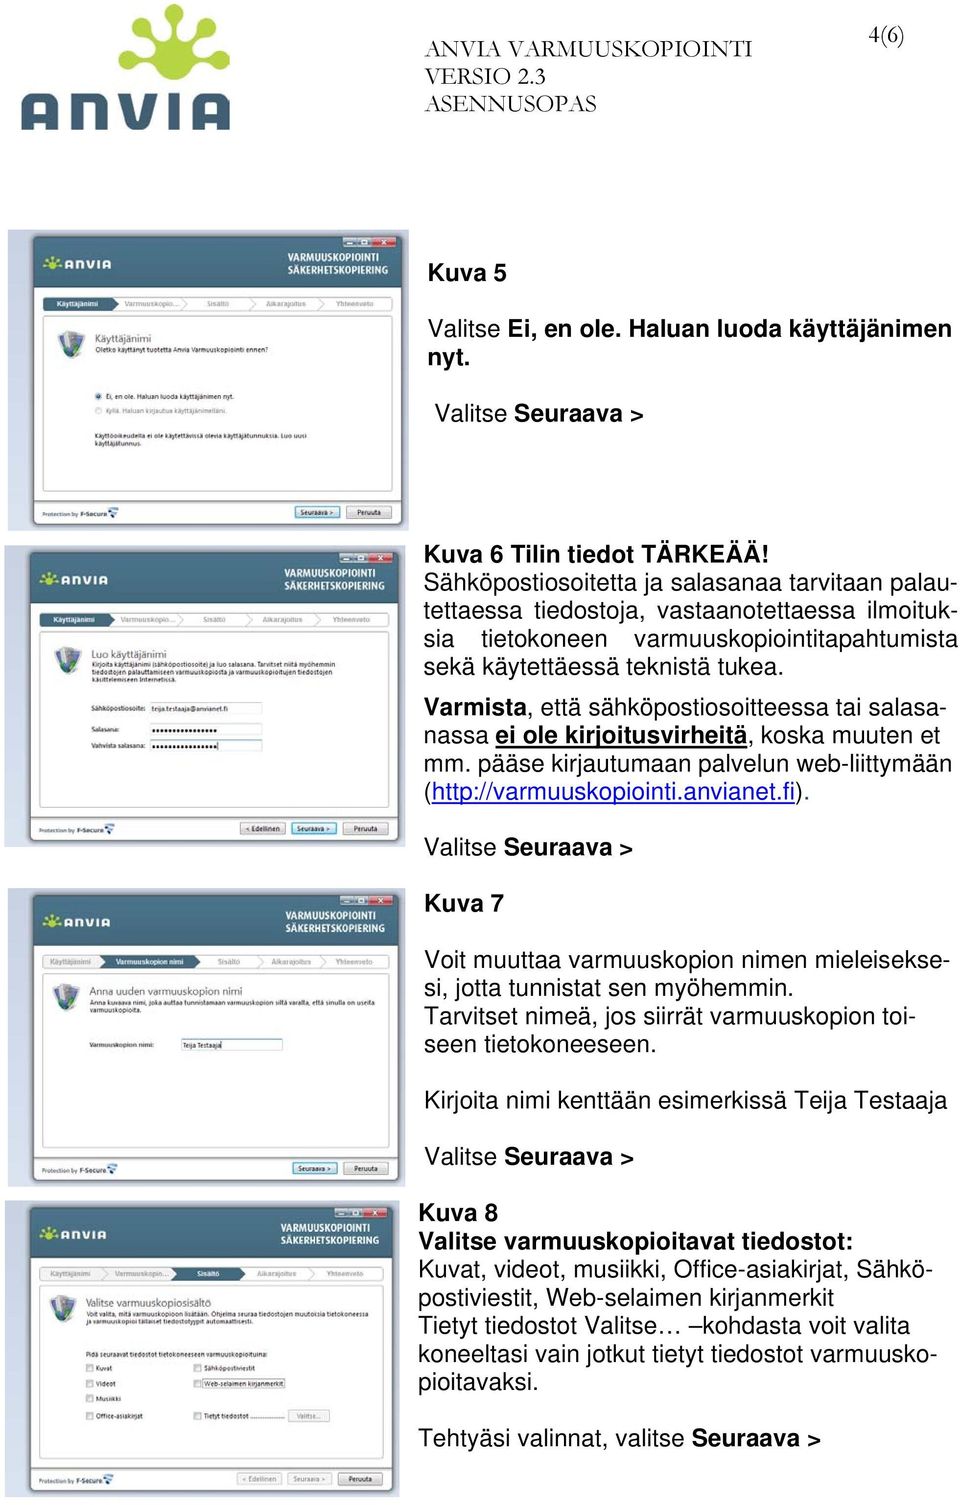 Varmista, että sähköpostiosoitteessa tai salasanassa ei ole kirjoitusvirheitä, koska muuten et mm. pääse kirjautumaan palvelun web-liittymään (http://varmuuskopiointi.anvianet.fi).